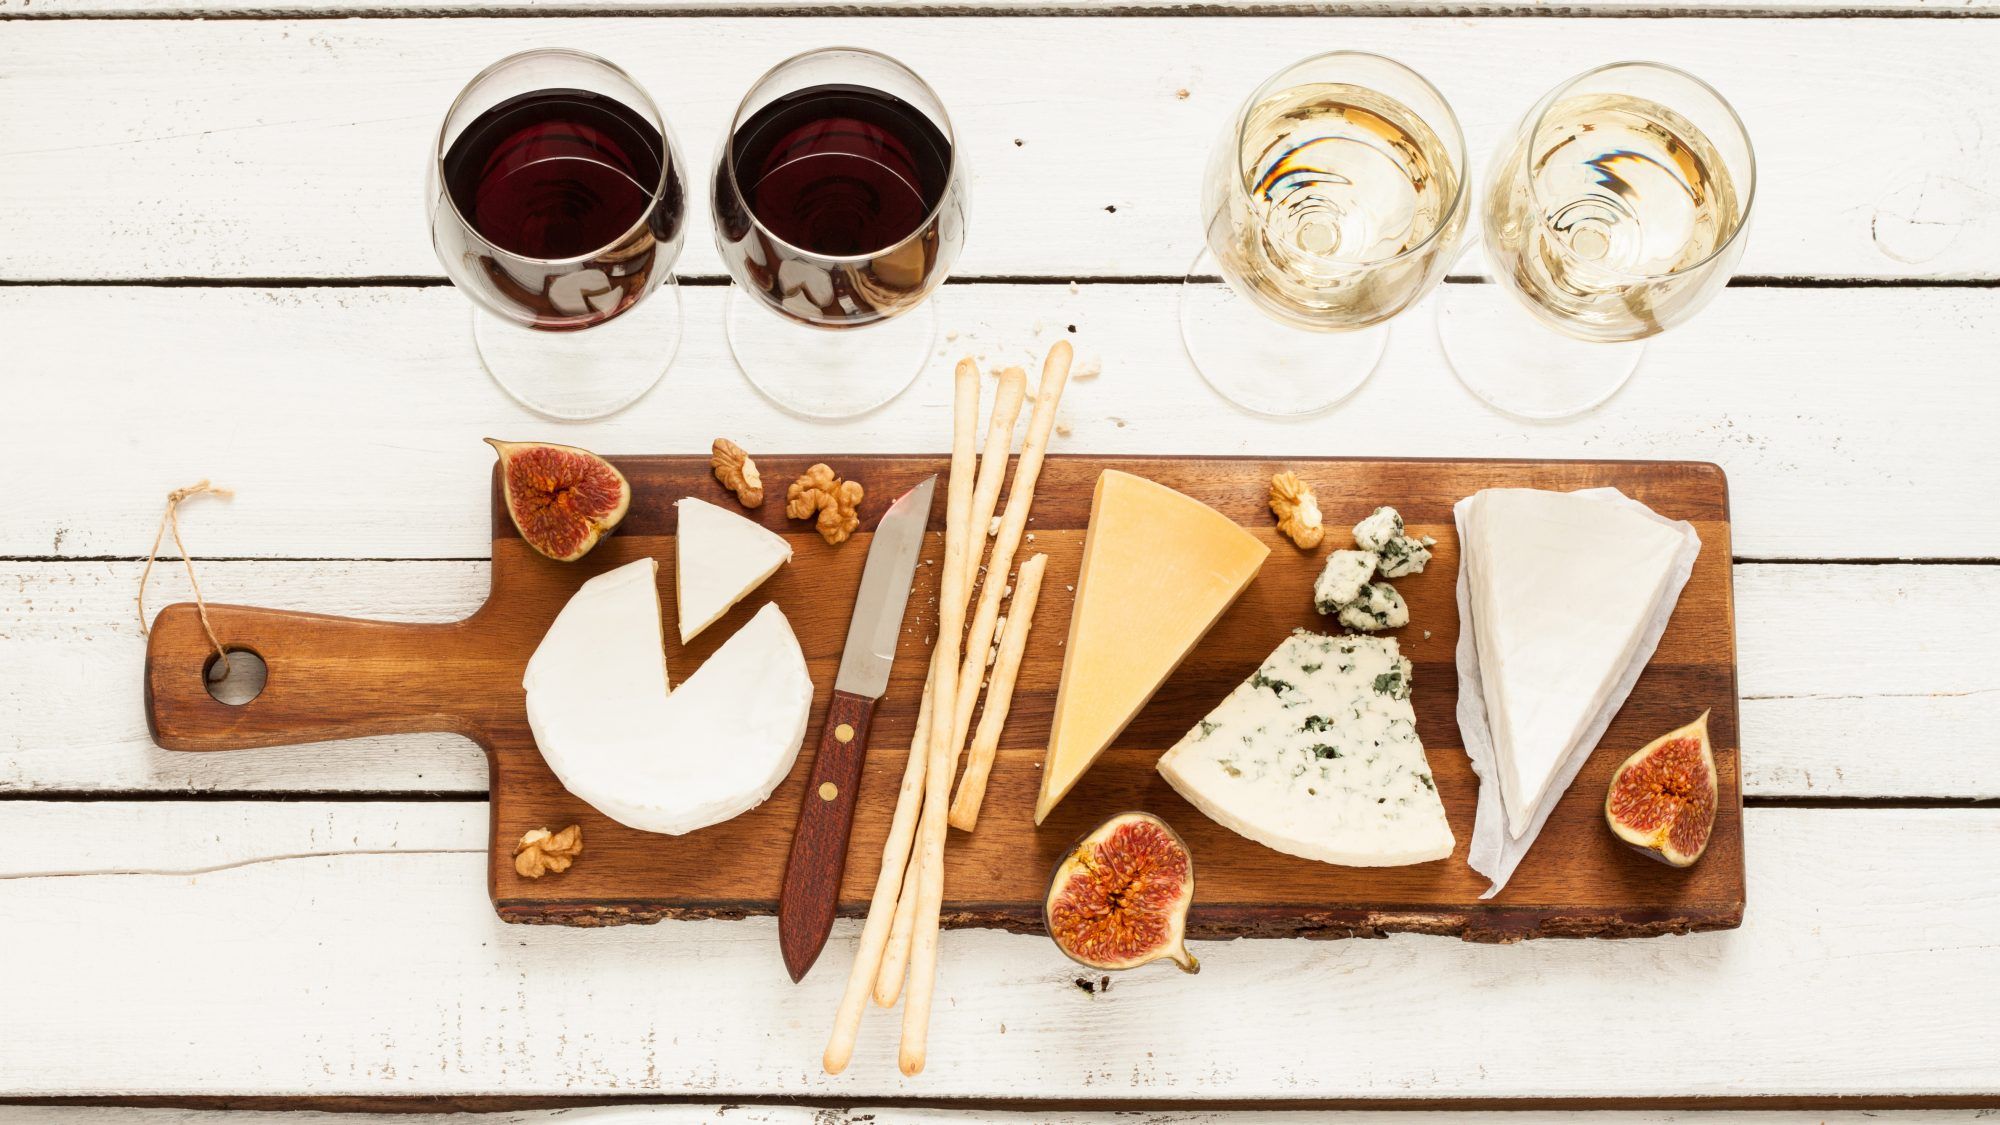 plata sa sirom s vinom: pogreške u spajanju vina i sira